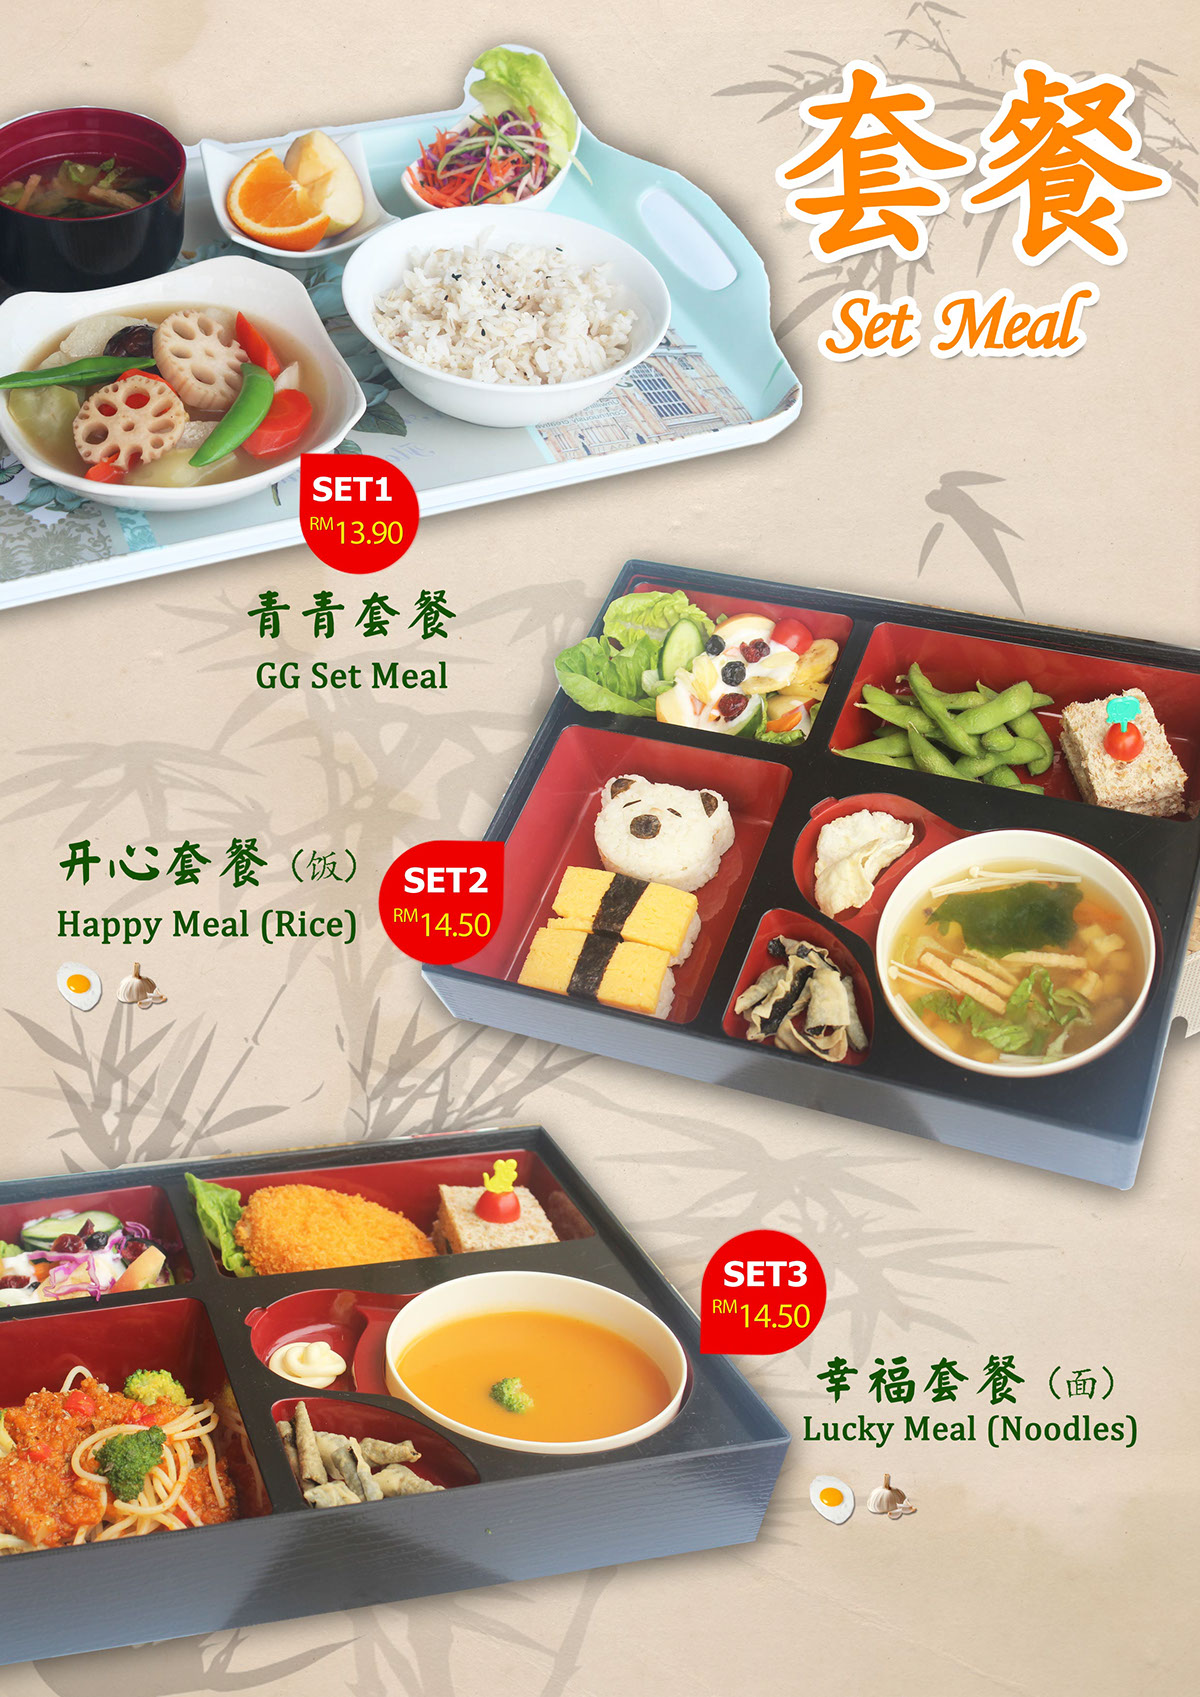 menu greengreencafe cafe chineserestaurant Vegetarian Food 